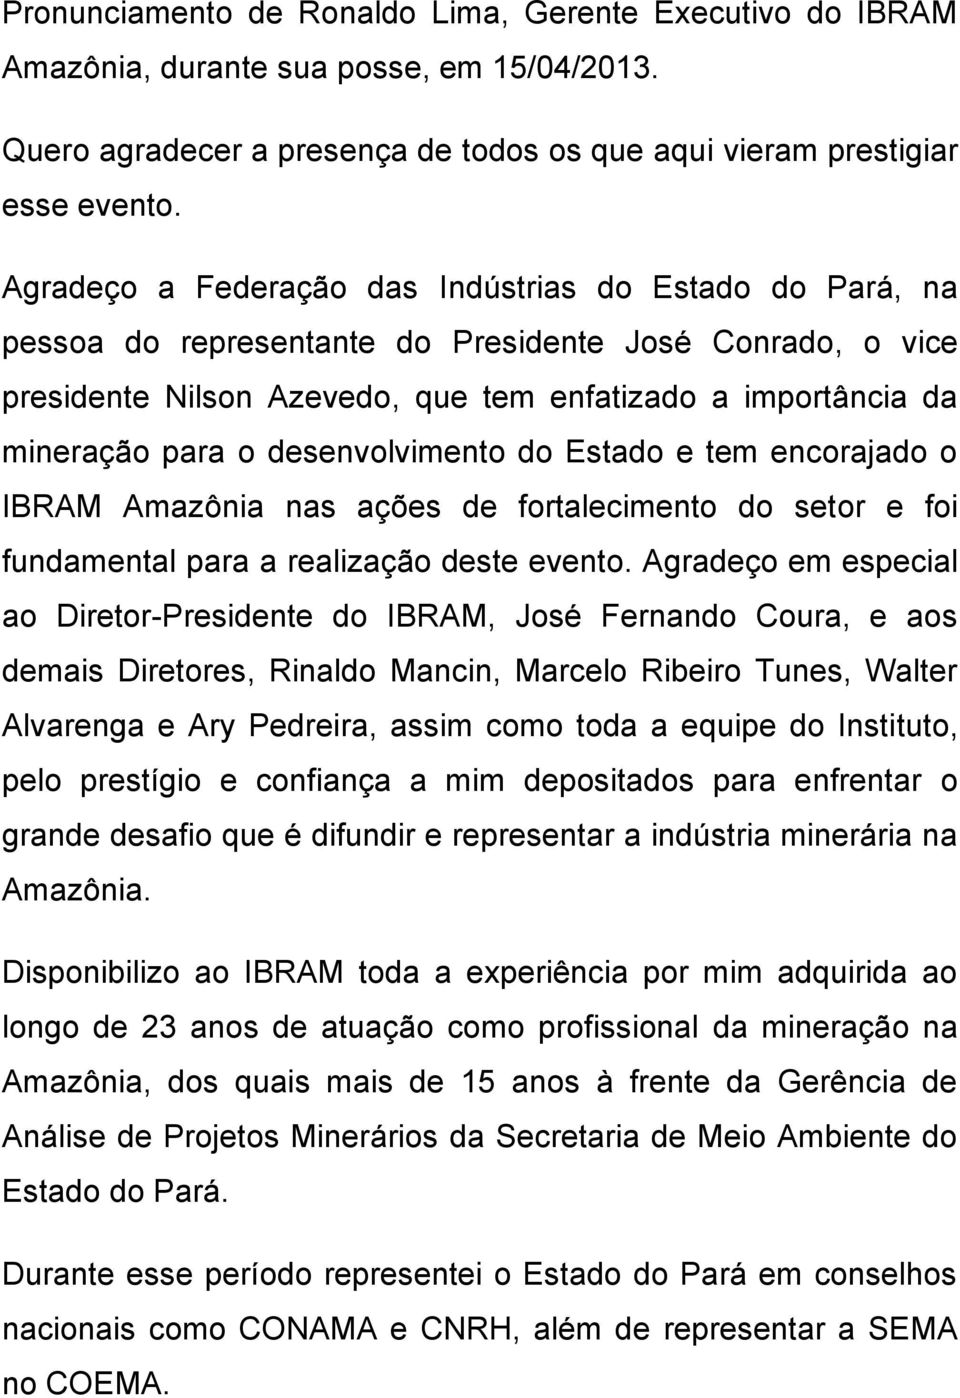 desenvolvimento do Estado e tem encorajado o IBRAM Amazônia nas ações de fortalecimento do setor e foi fundamental para a realização deste evento.